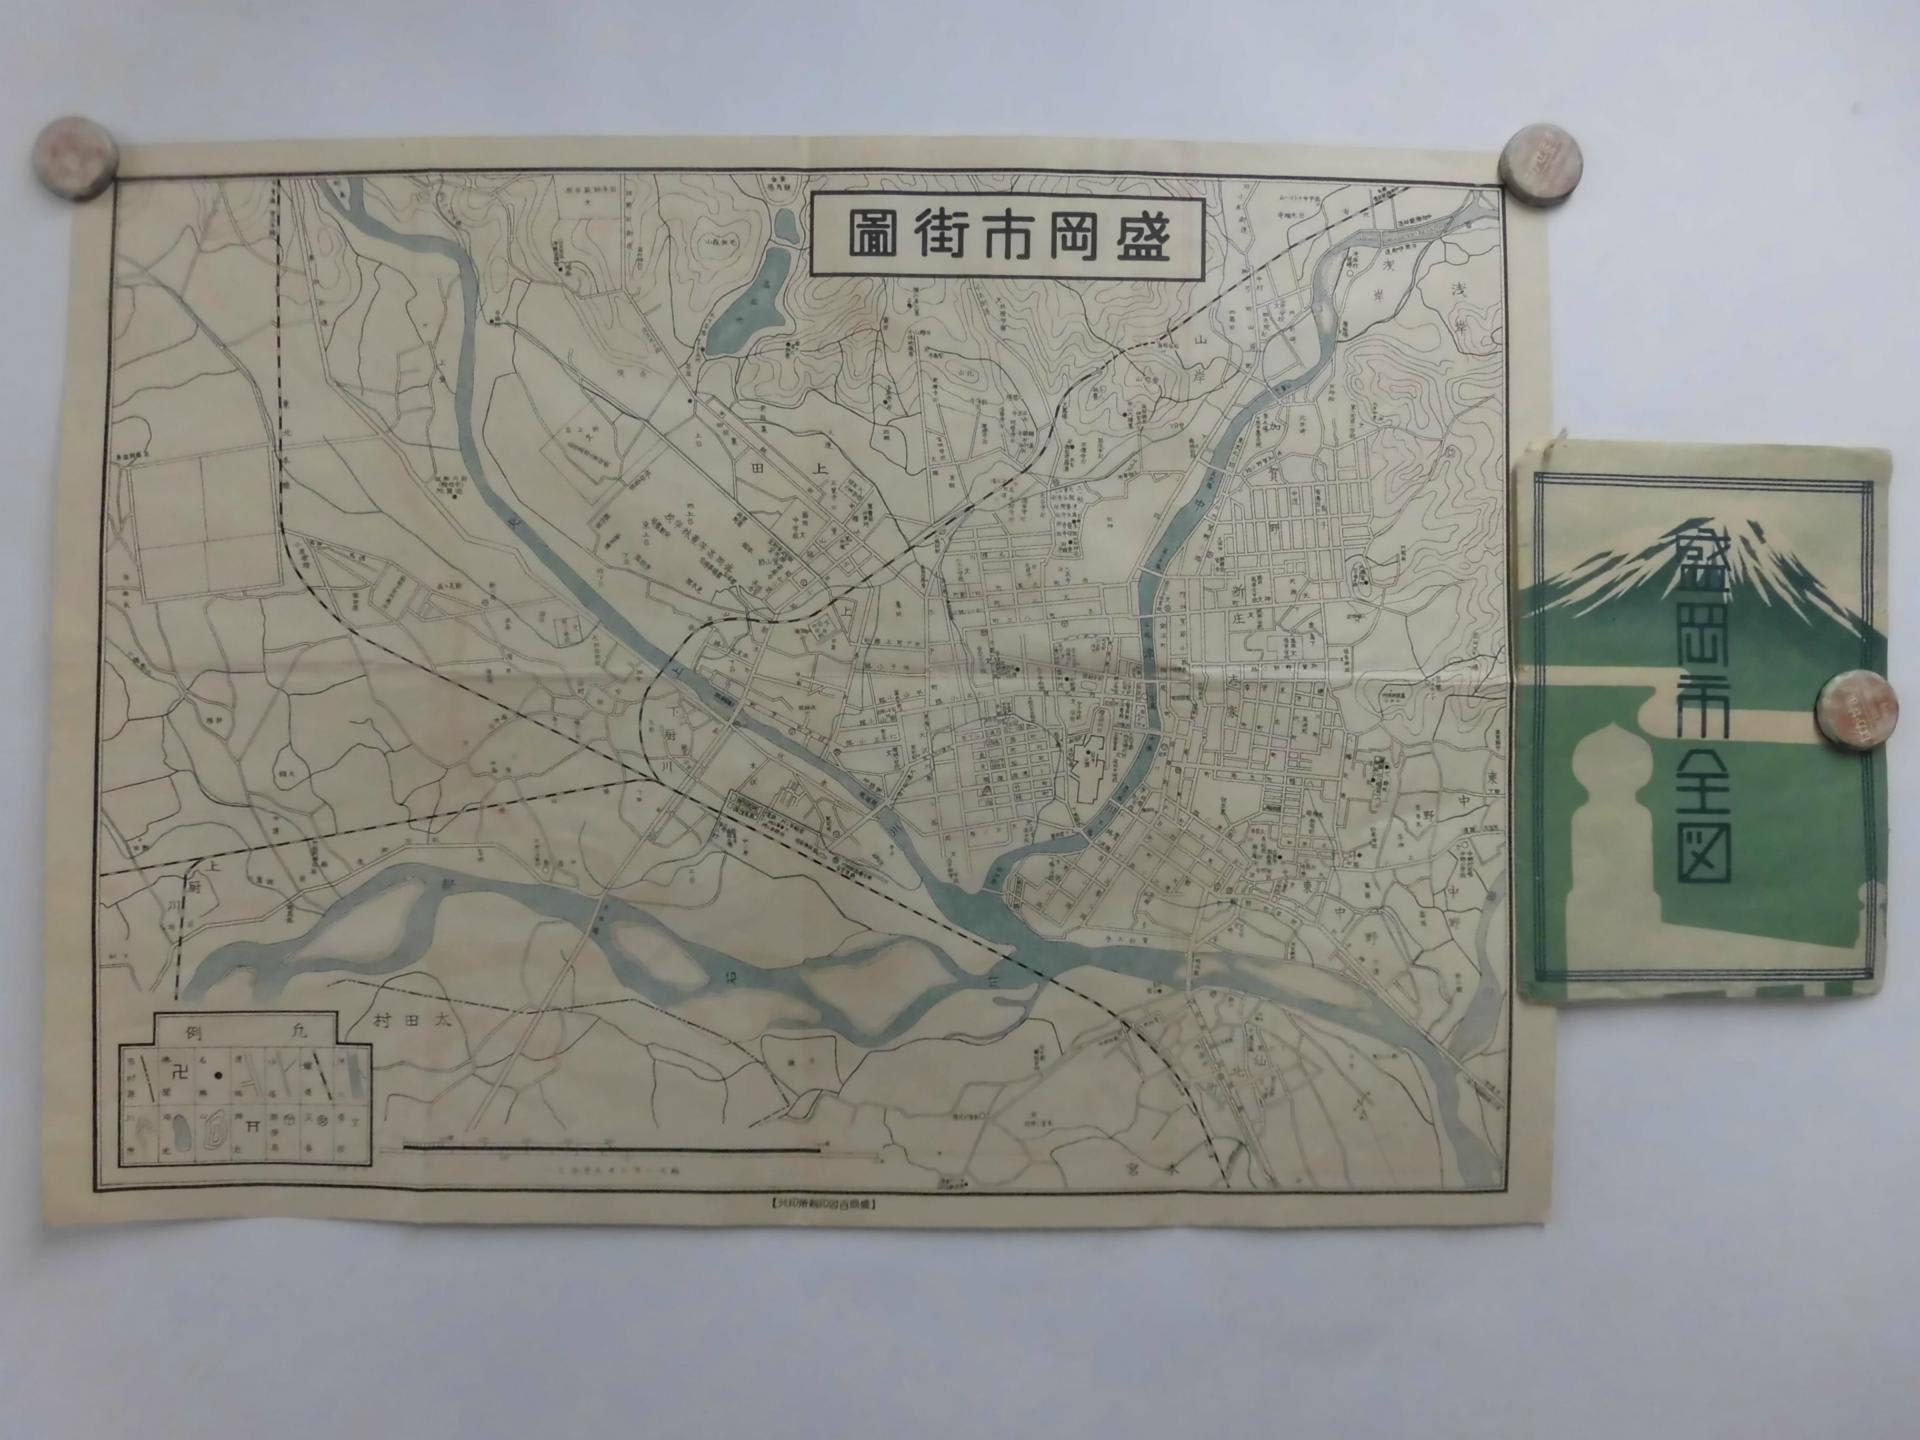 盛岡市街圖 年代不詳 - 新日本古地図学会